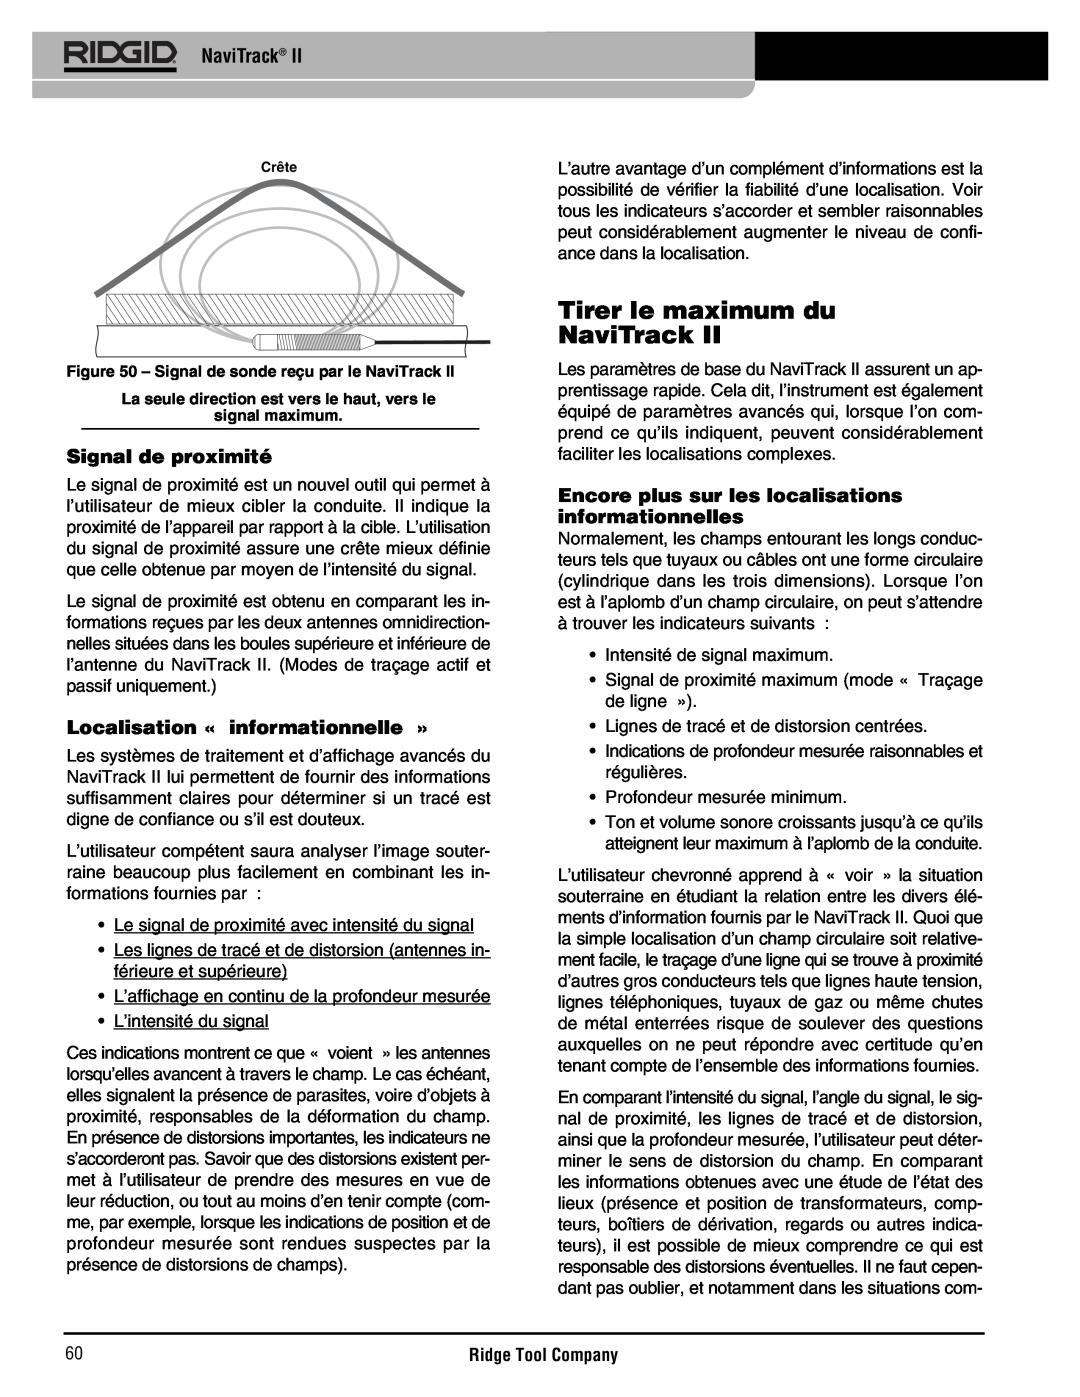 RIDGID Metal Detector manual Tirer le maximum du NaviTrack, Signal de proximité, Localisation « informationnelle » 